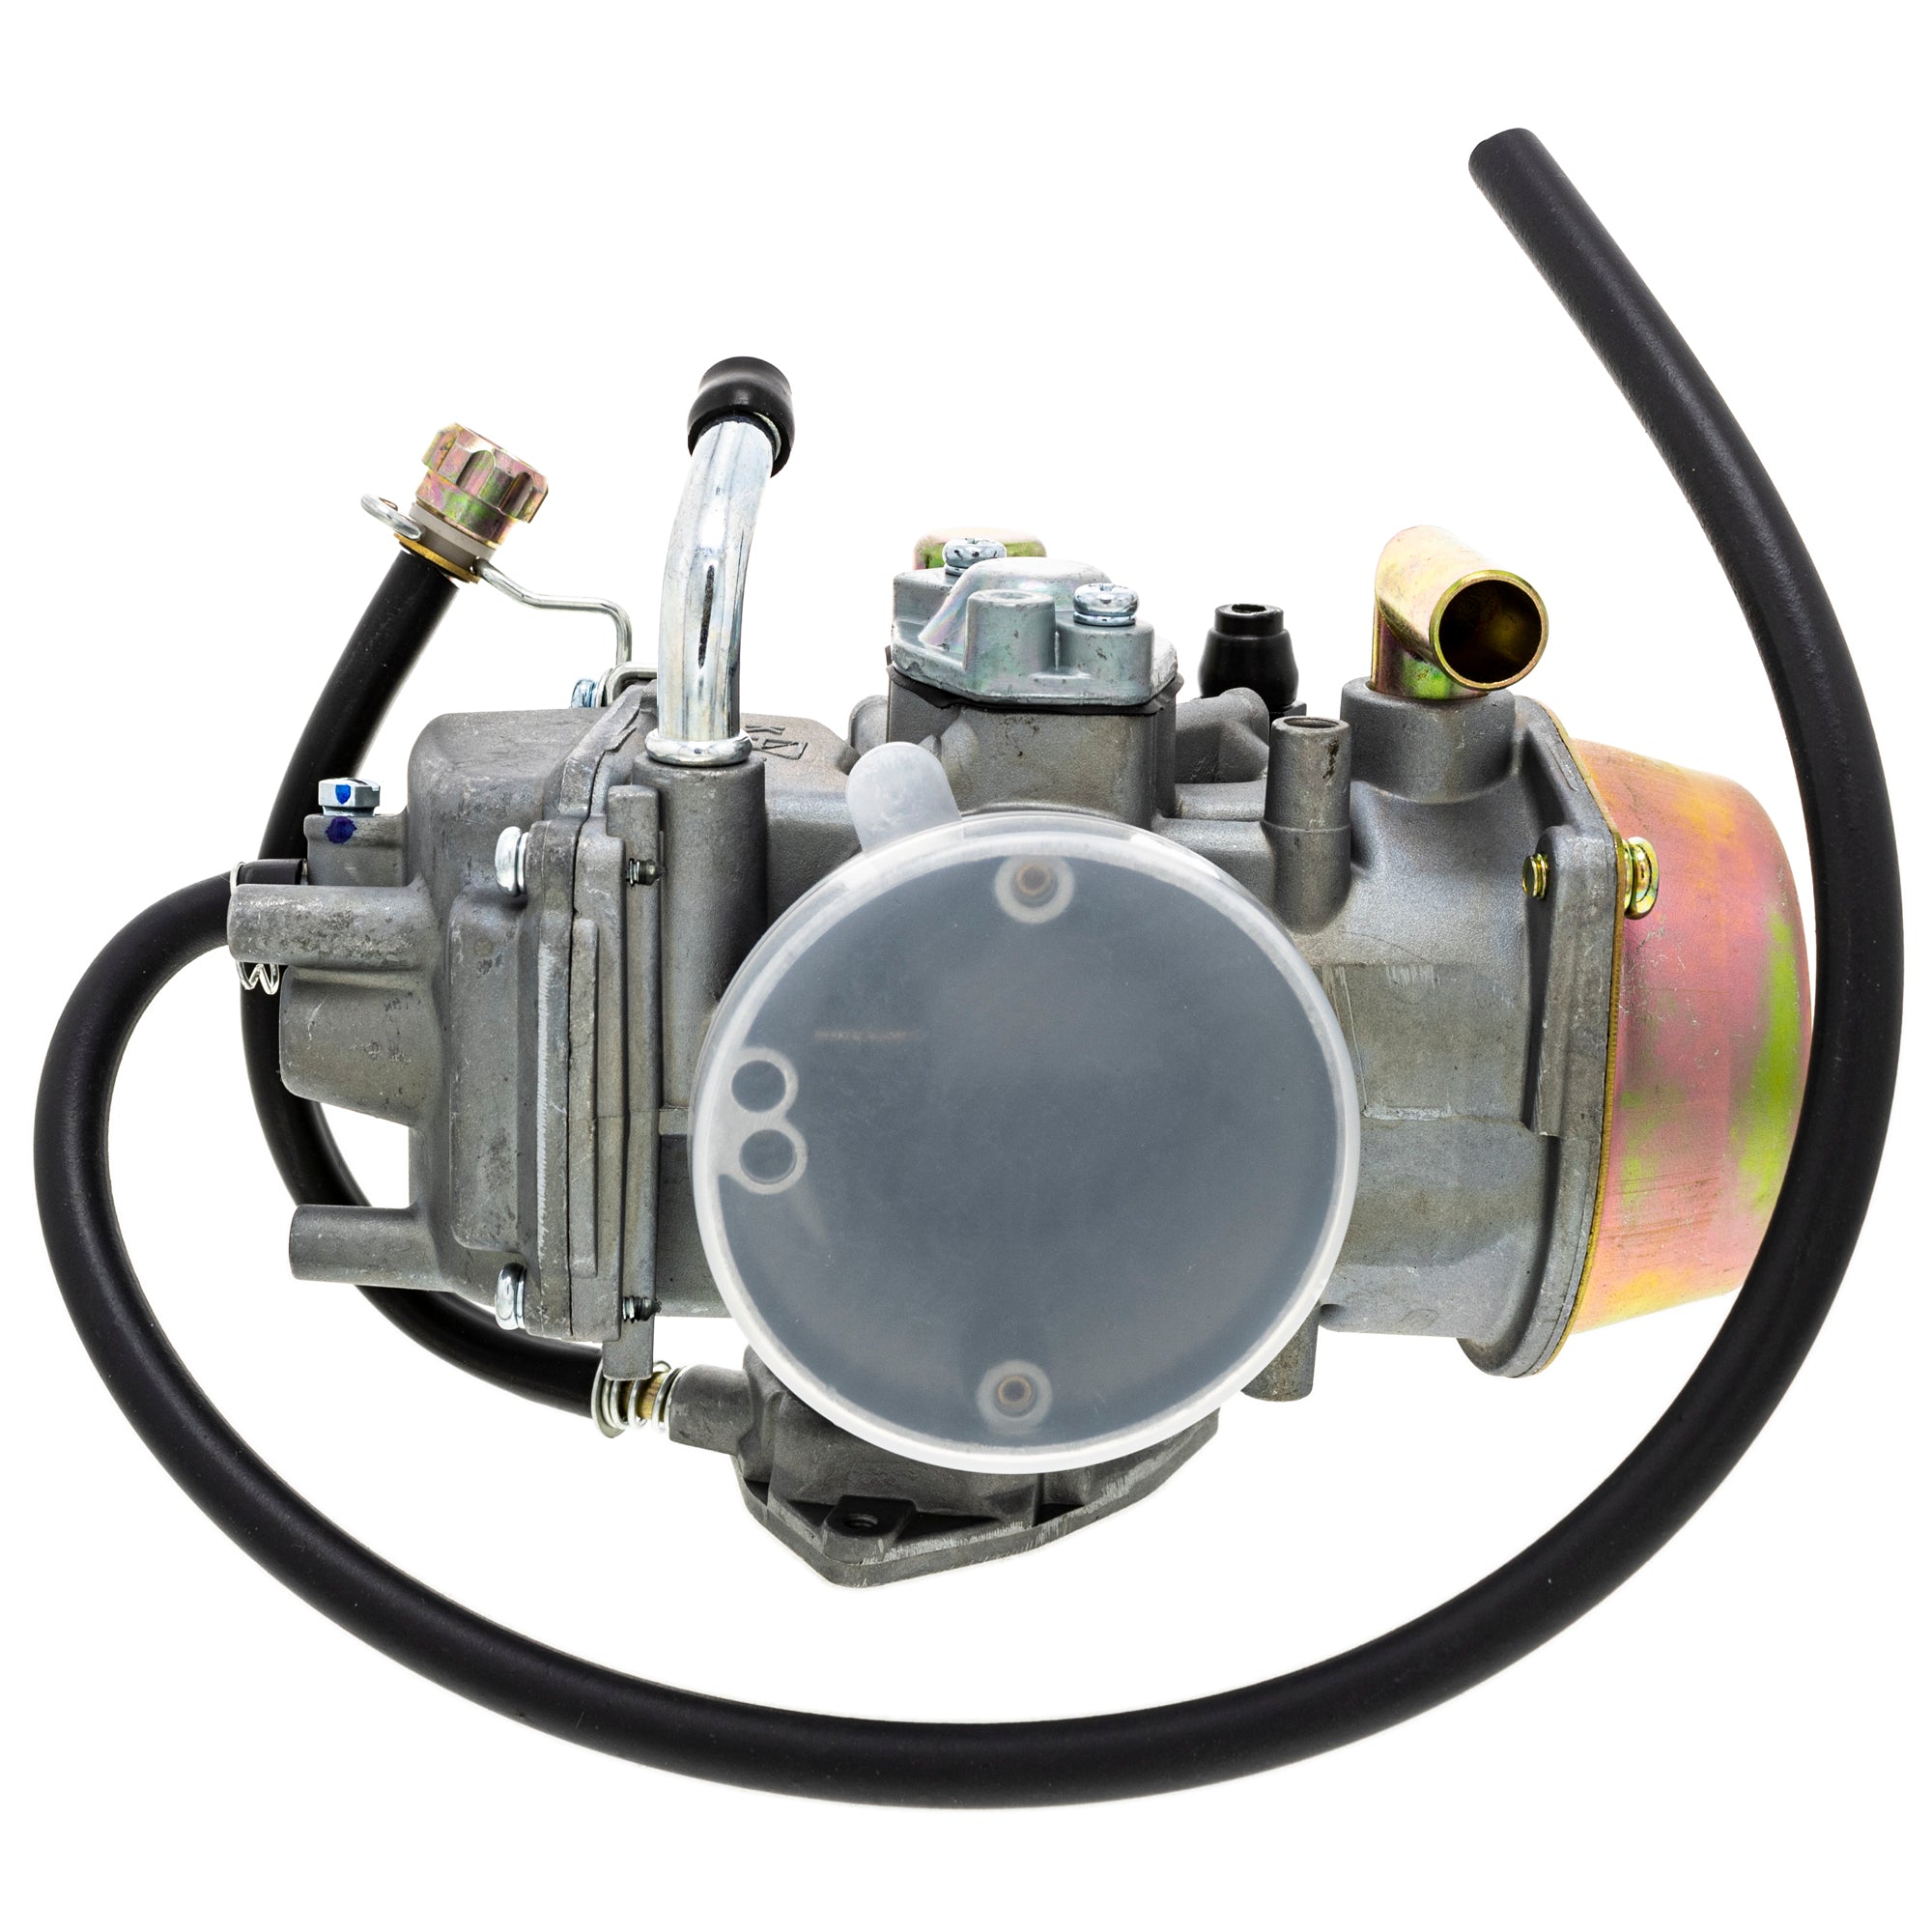 Carburetor for Can-Am Polaris Yamaha DS650 Baja Predator 2C6-14901-00